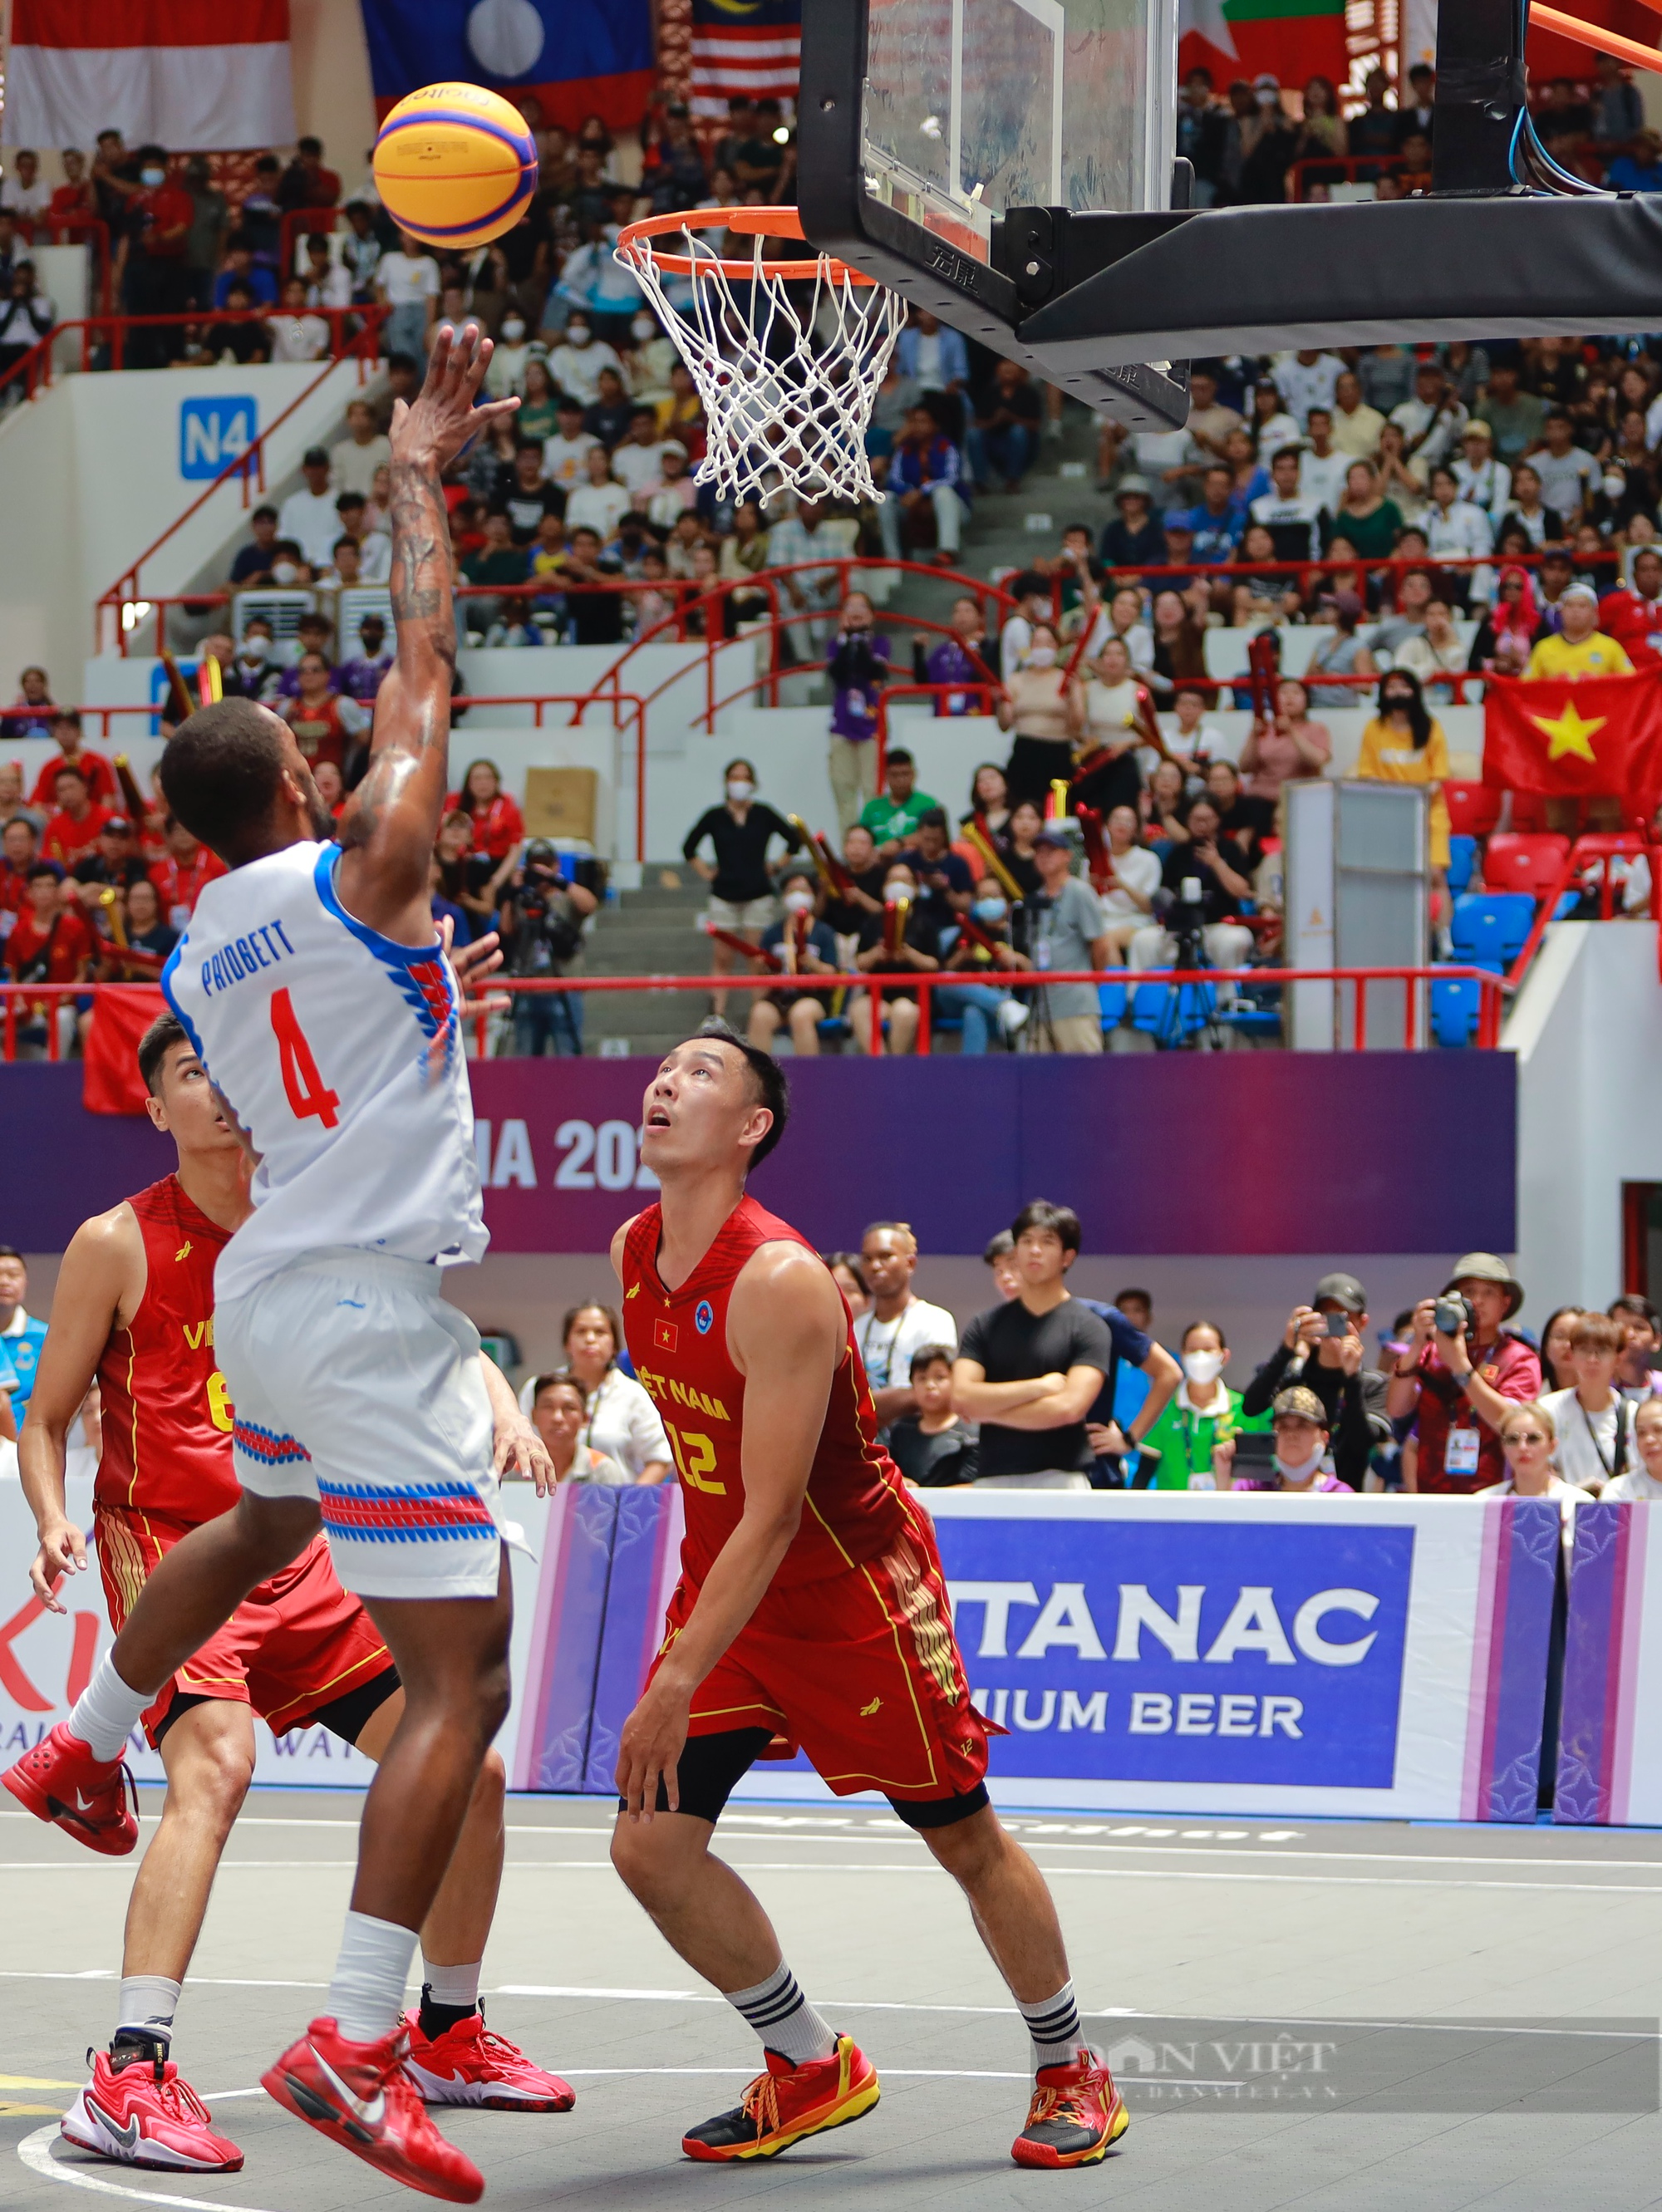 Thua đáng tiếc trước Campuchia, Việt Nam tranh HCĐ bóng rổ 3x3 nam với Thái Lan - Ảnh 1.